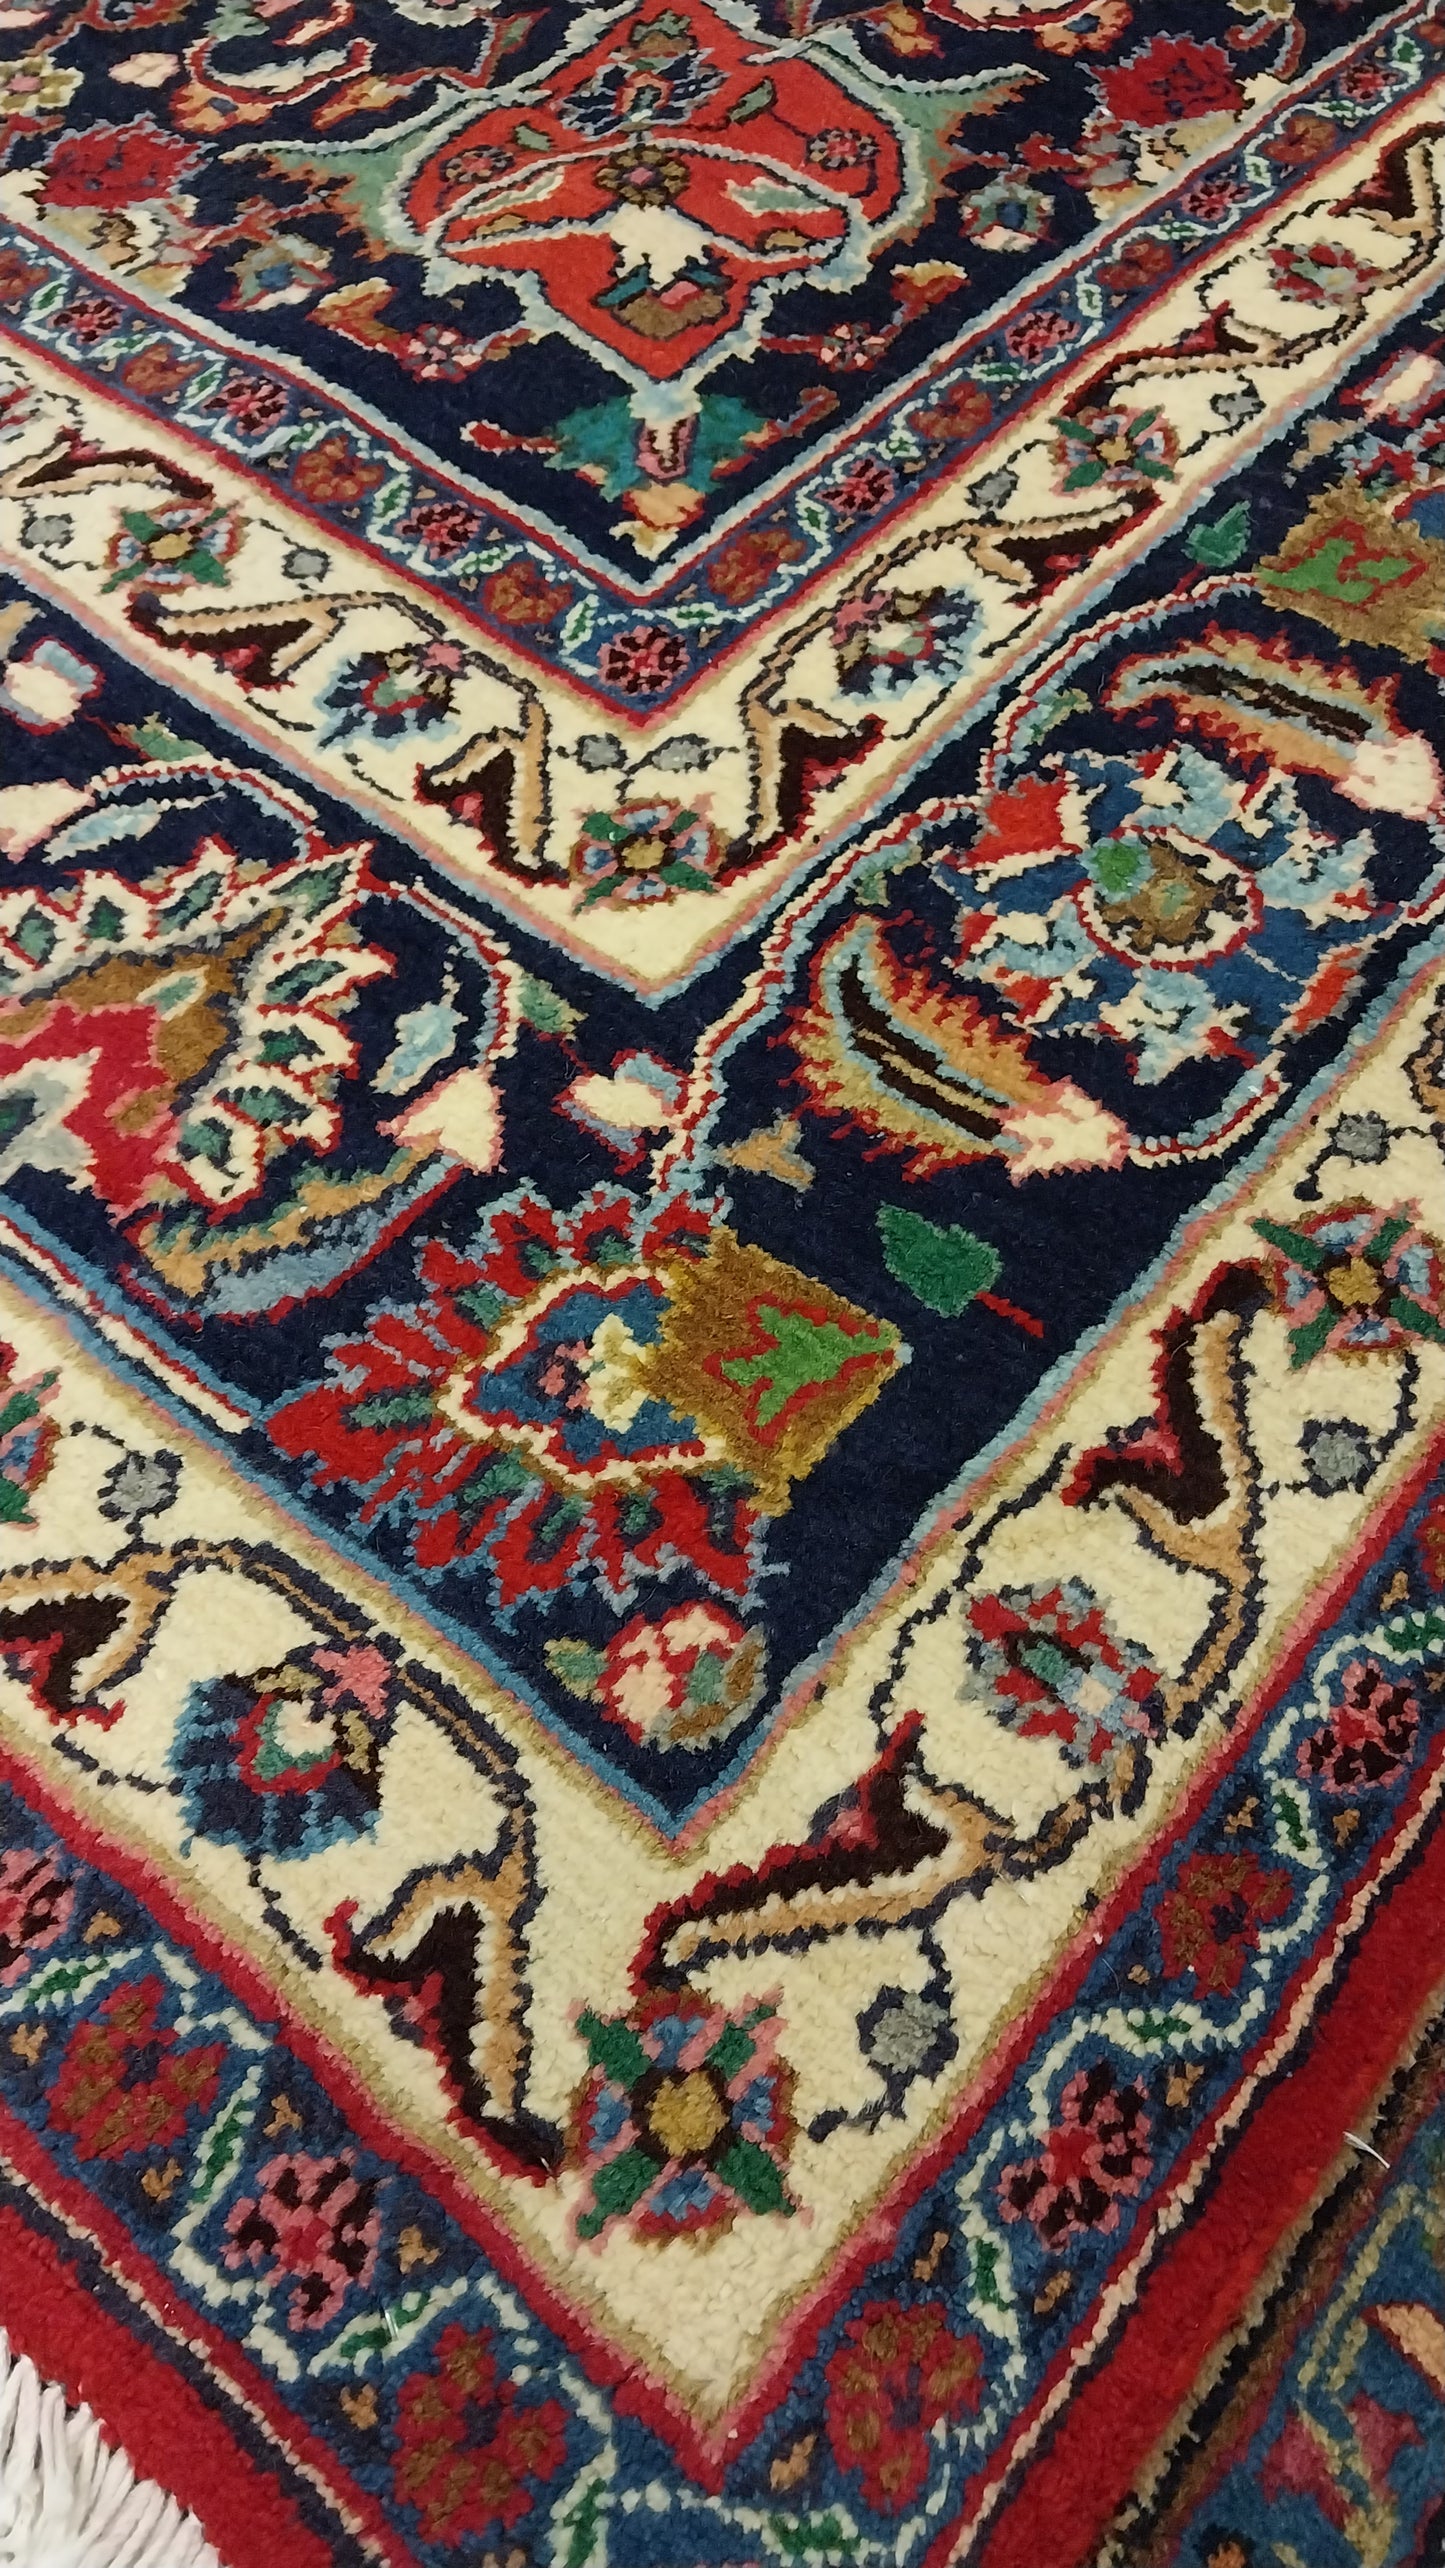 Persian carpet (340cm x 245cm)